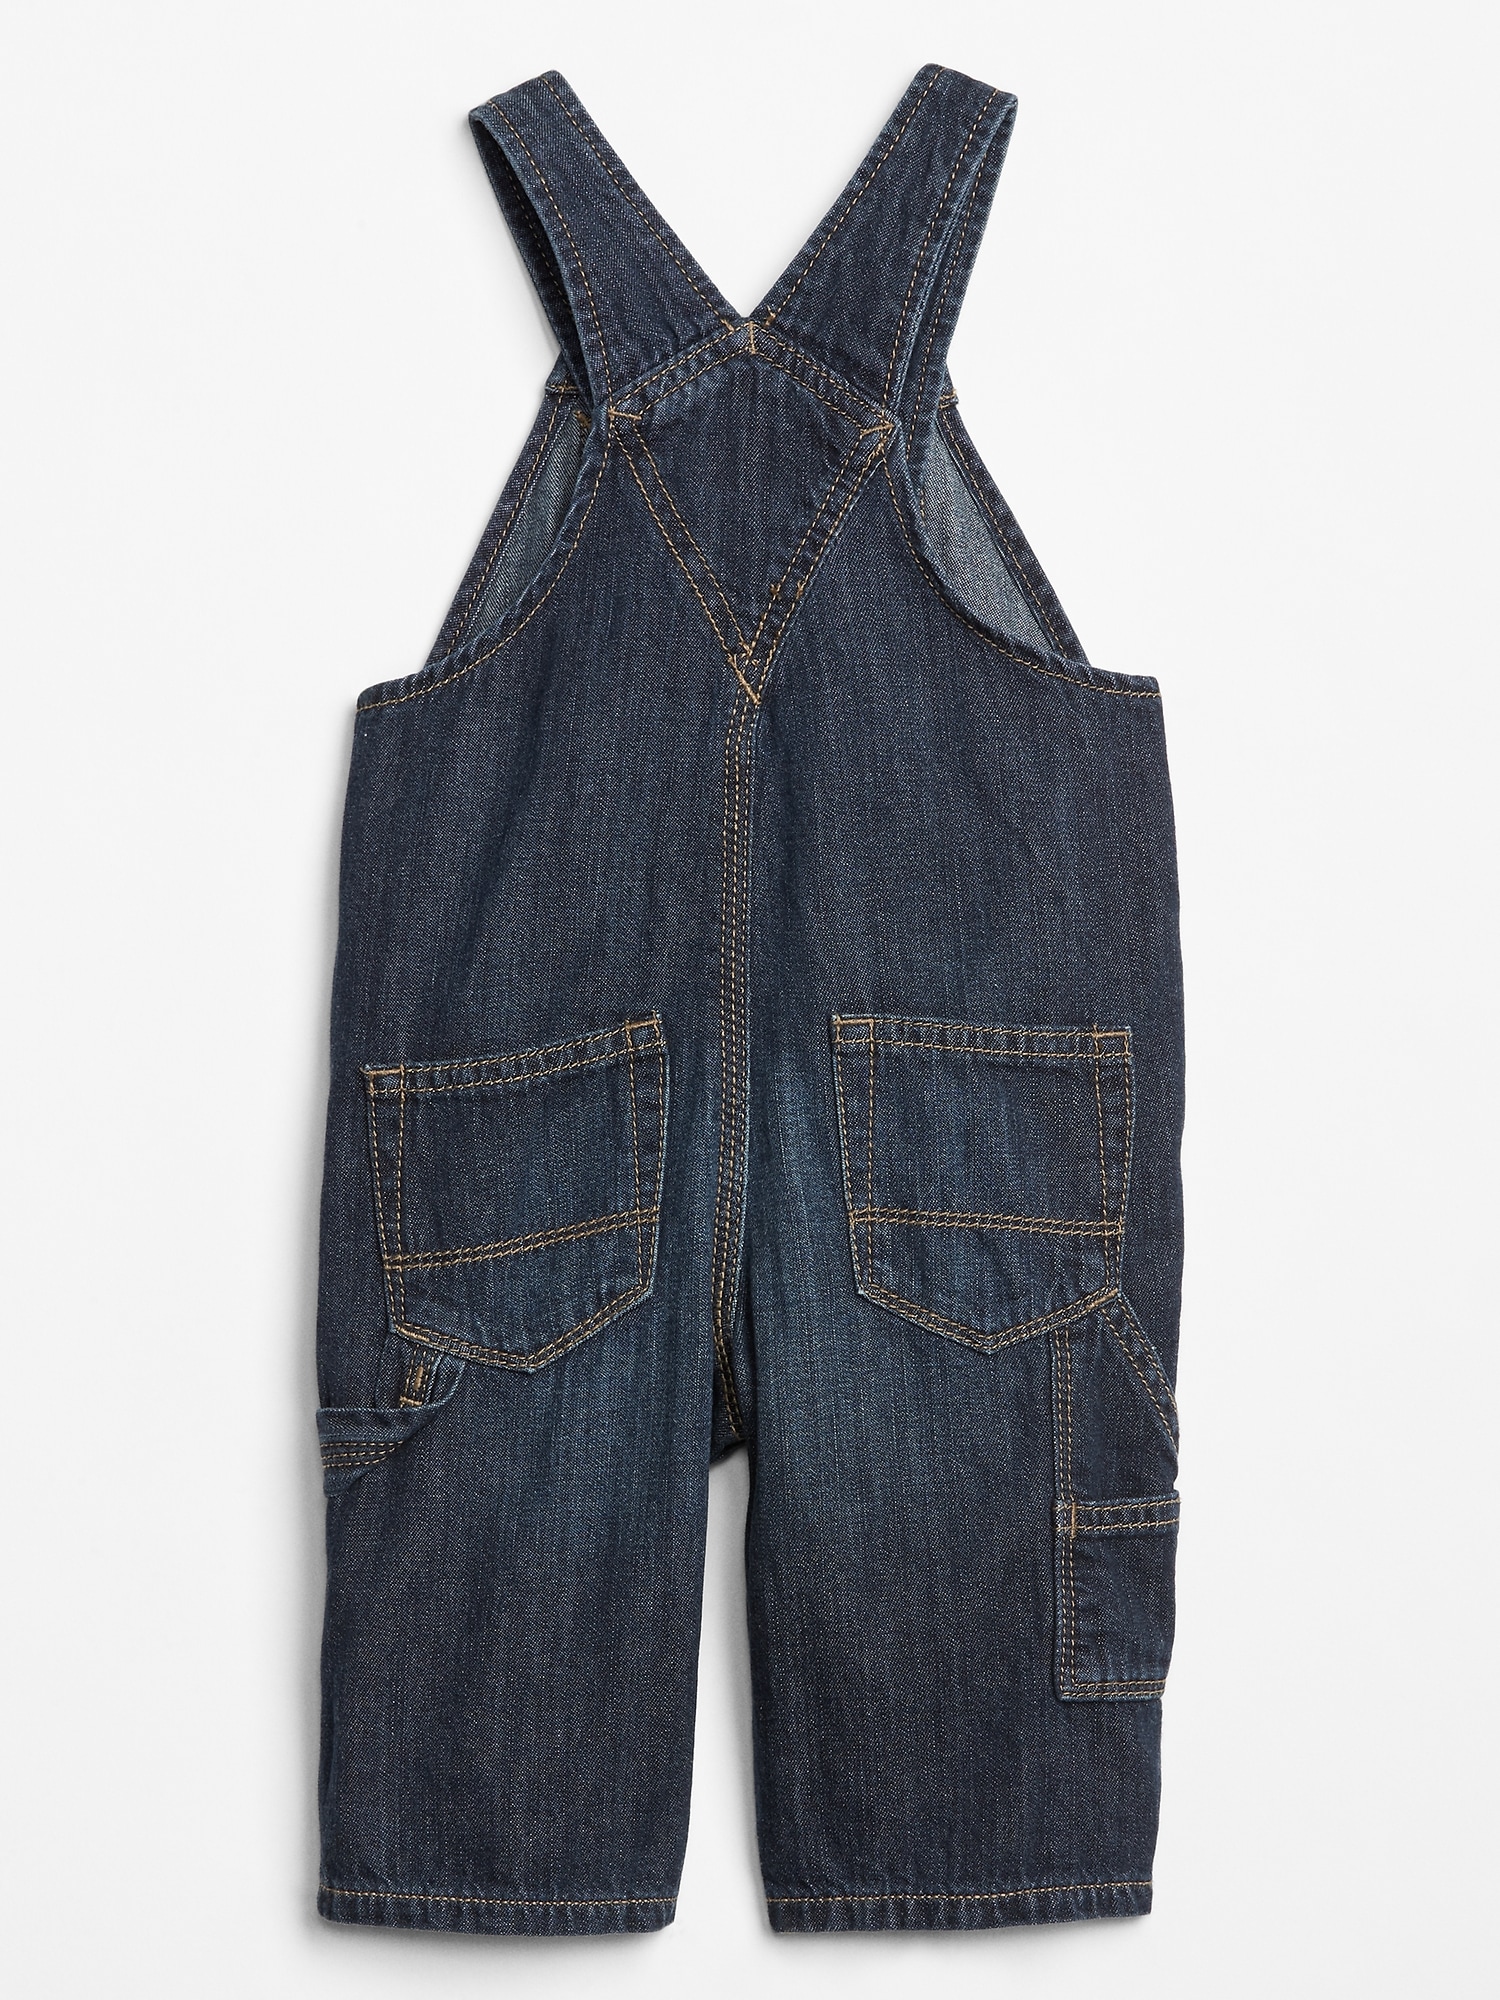 infant blue jean overalls